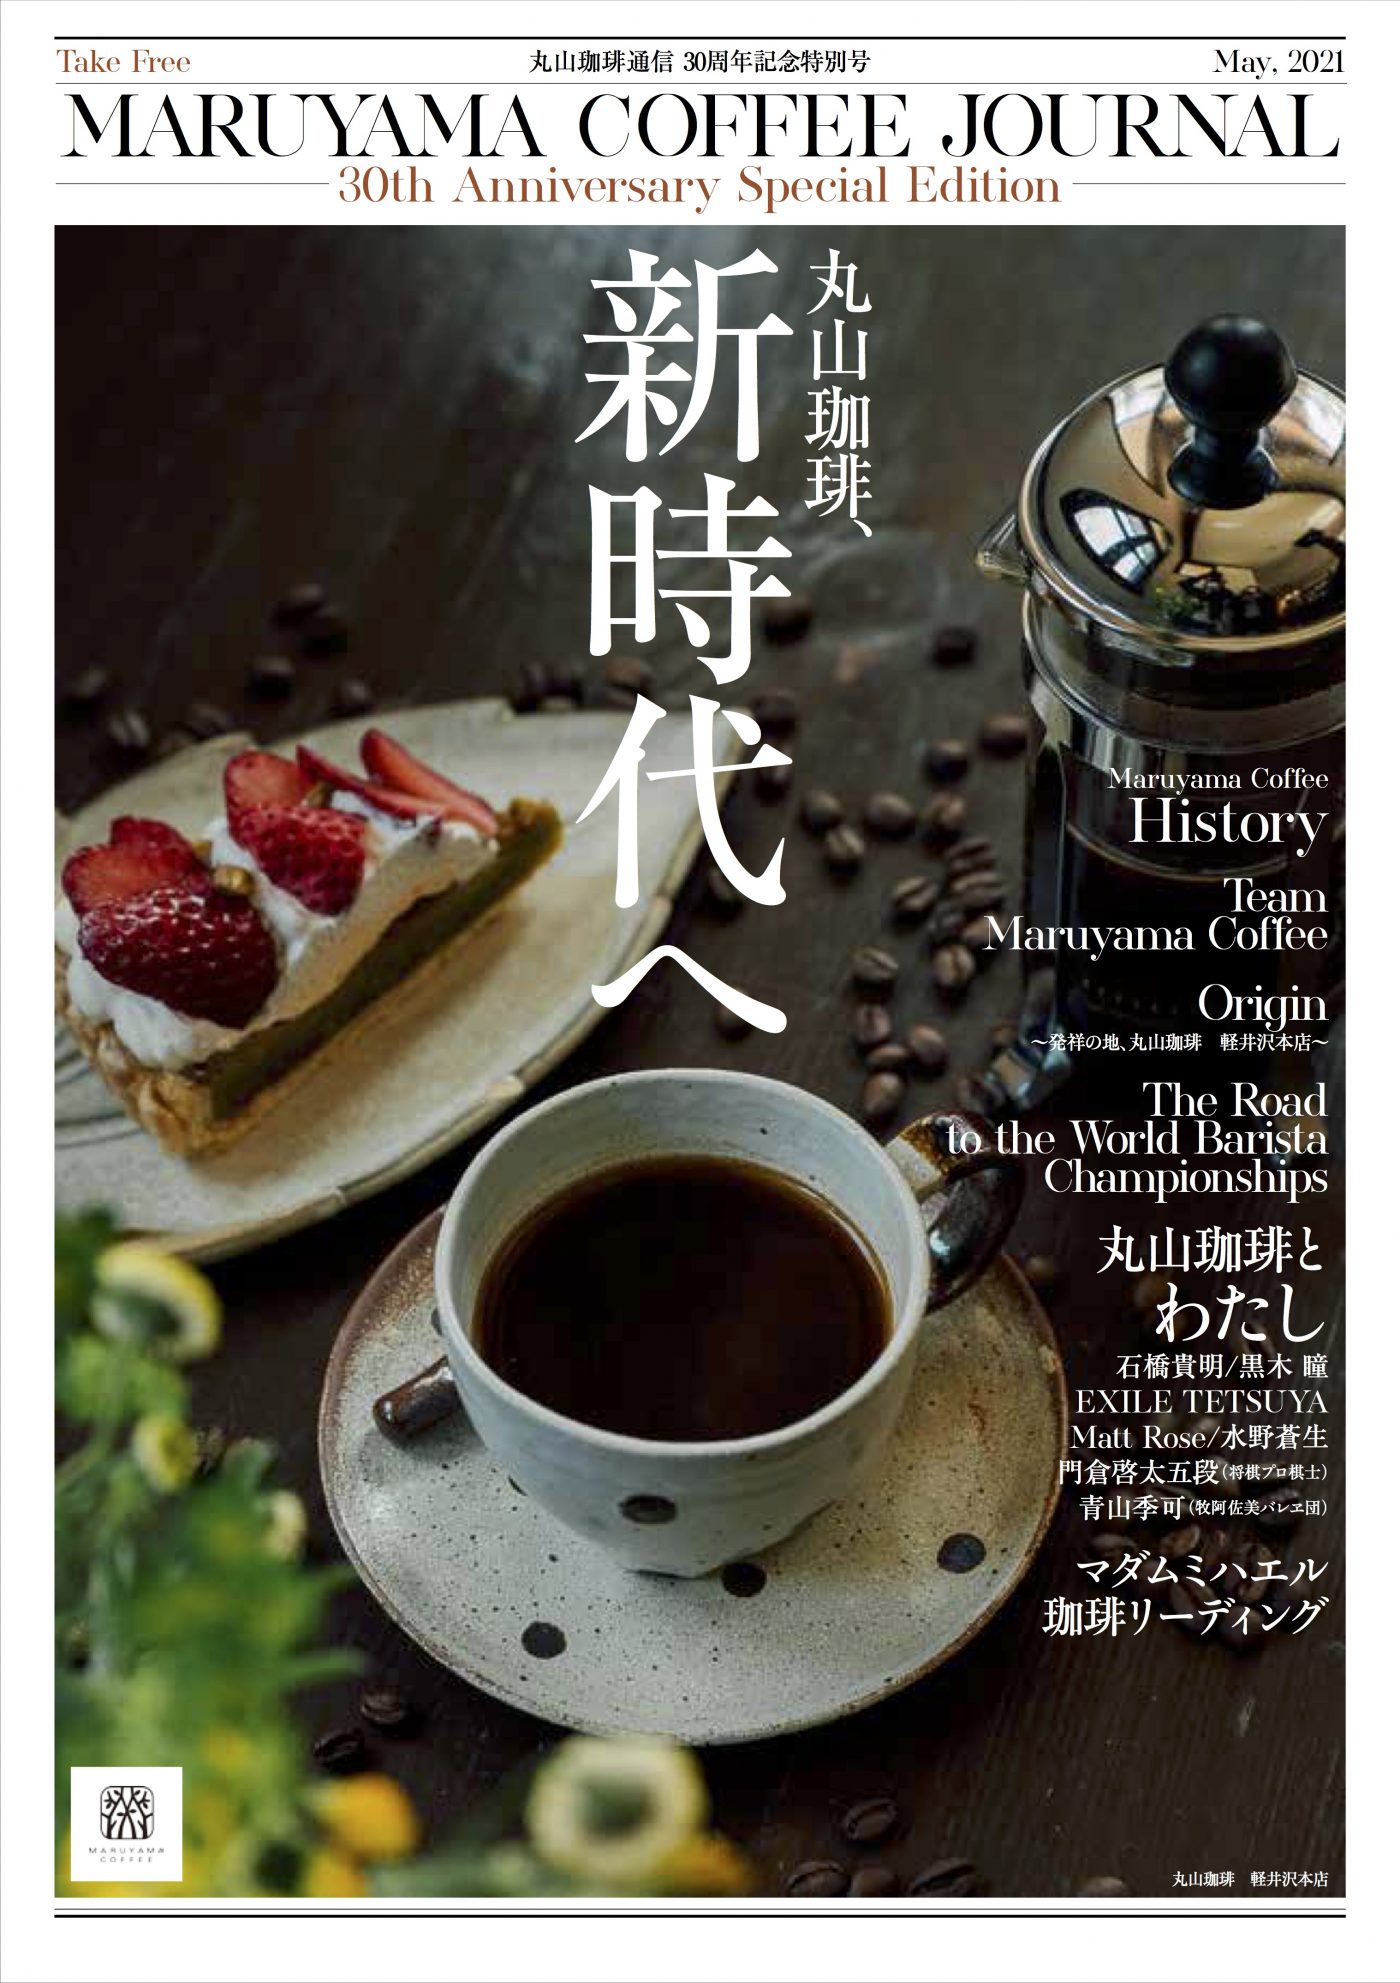 丸山珈琲通信 30周年記念特別号 発刊のお知らせ 丸山珈琲 Maruyama Coffee